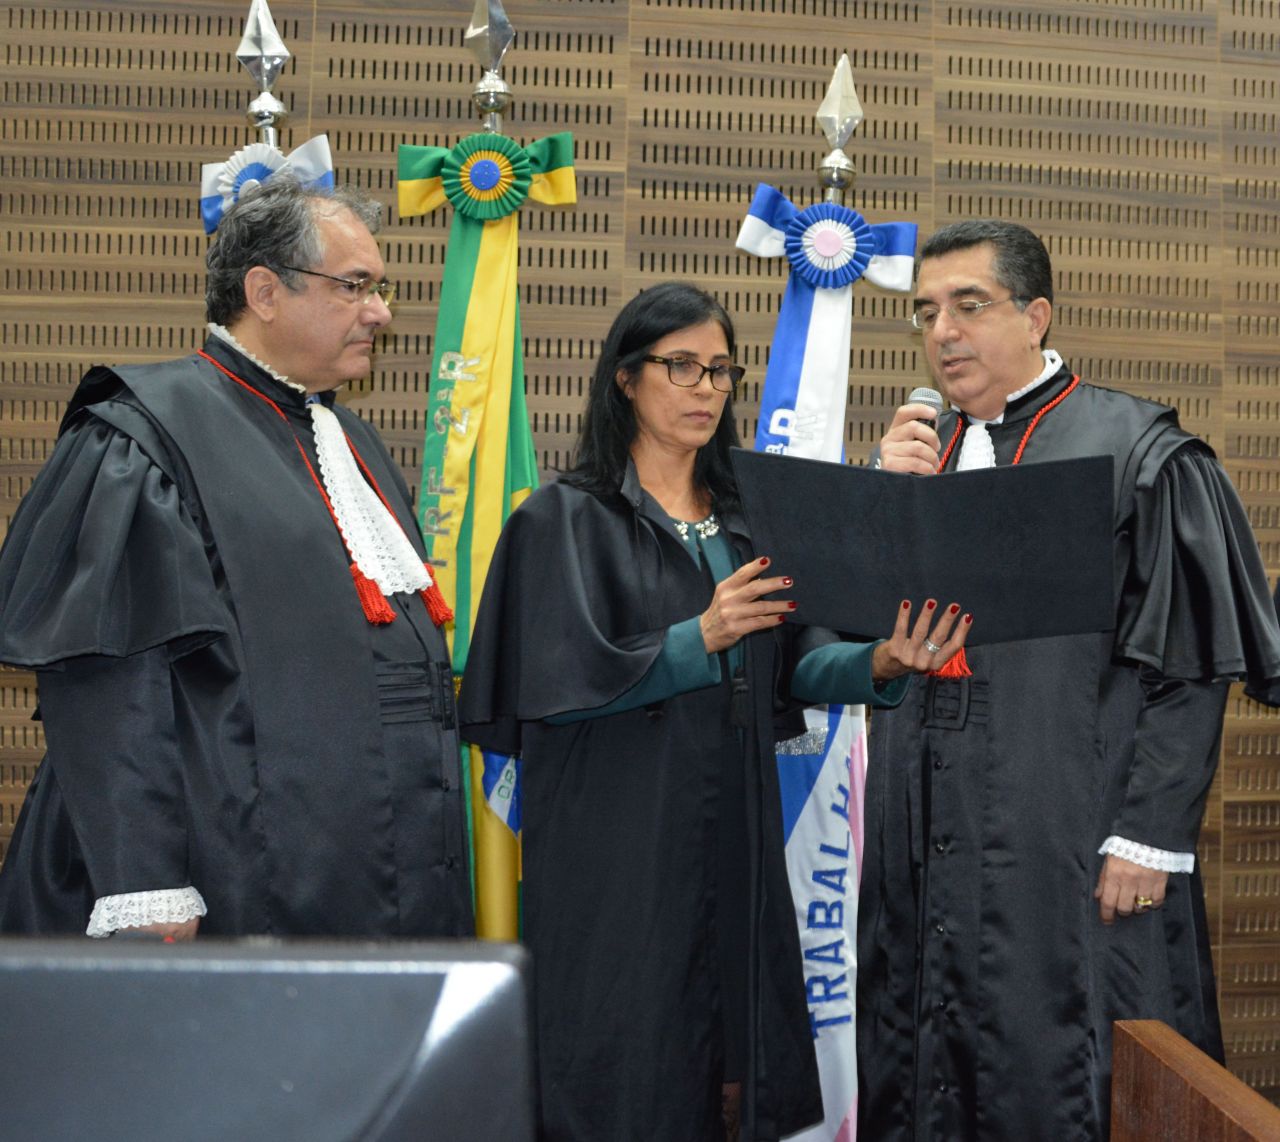 Alcides Martins (à direita) presta o juramento ao presidente André Fontes